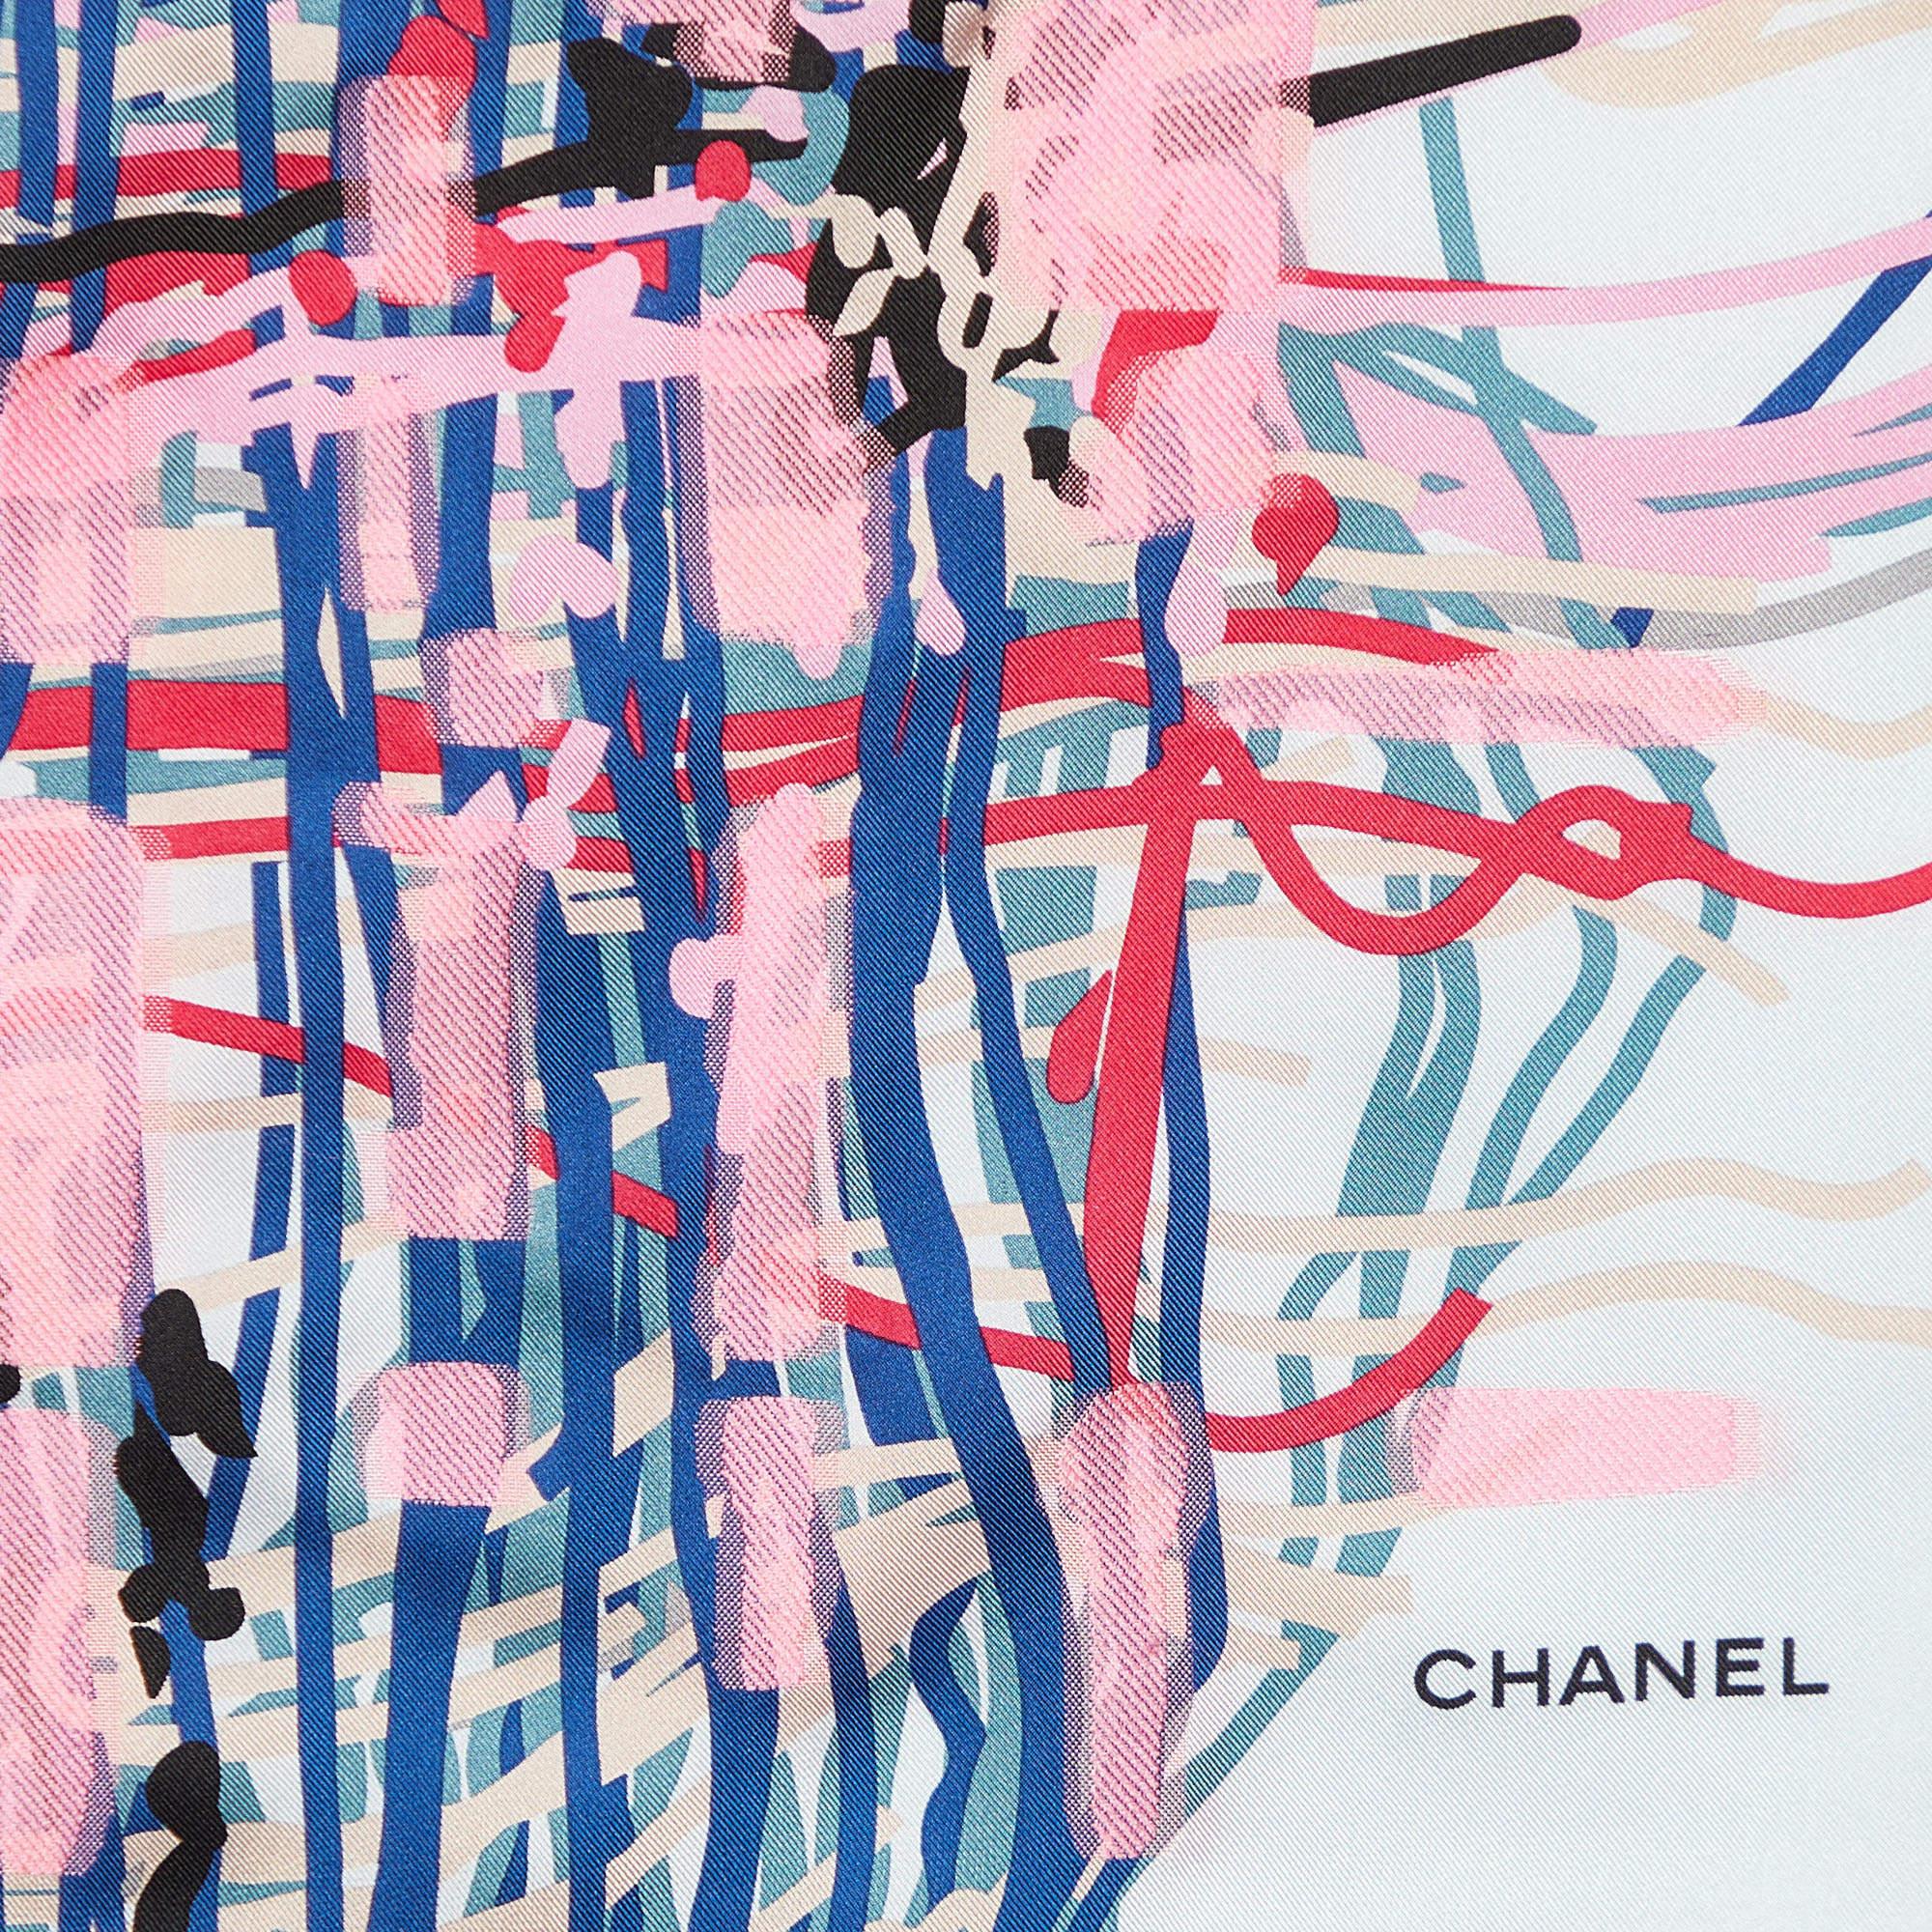 Dieser Chanel-Schal ist die perfekte Ergänzung zu Ihrem stilvollen Look! Sie wurde aus weichen Materialien in einem vielseitigen Farbton genäht und mit einem CC-Akzent verziert, der ihr eine besondere Note verleiht. Wickeln Sie es um Ihren Hals, um